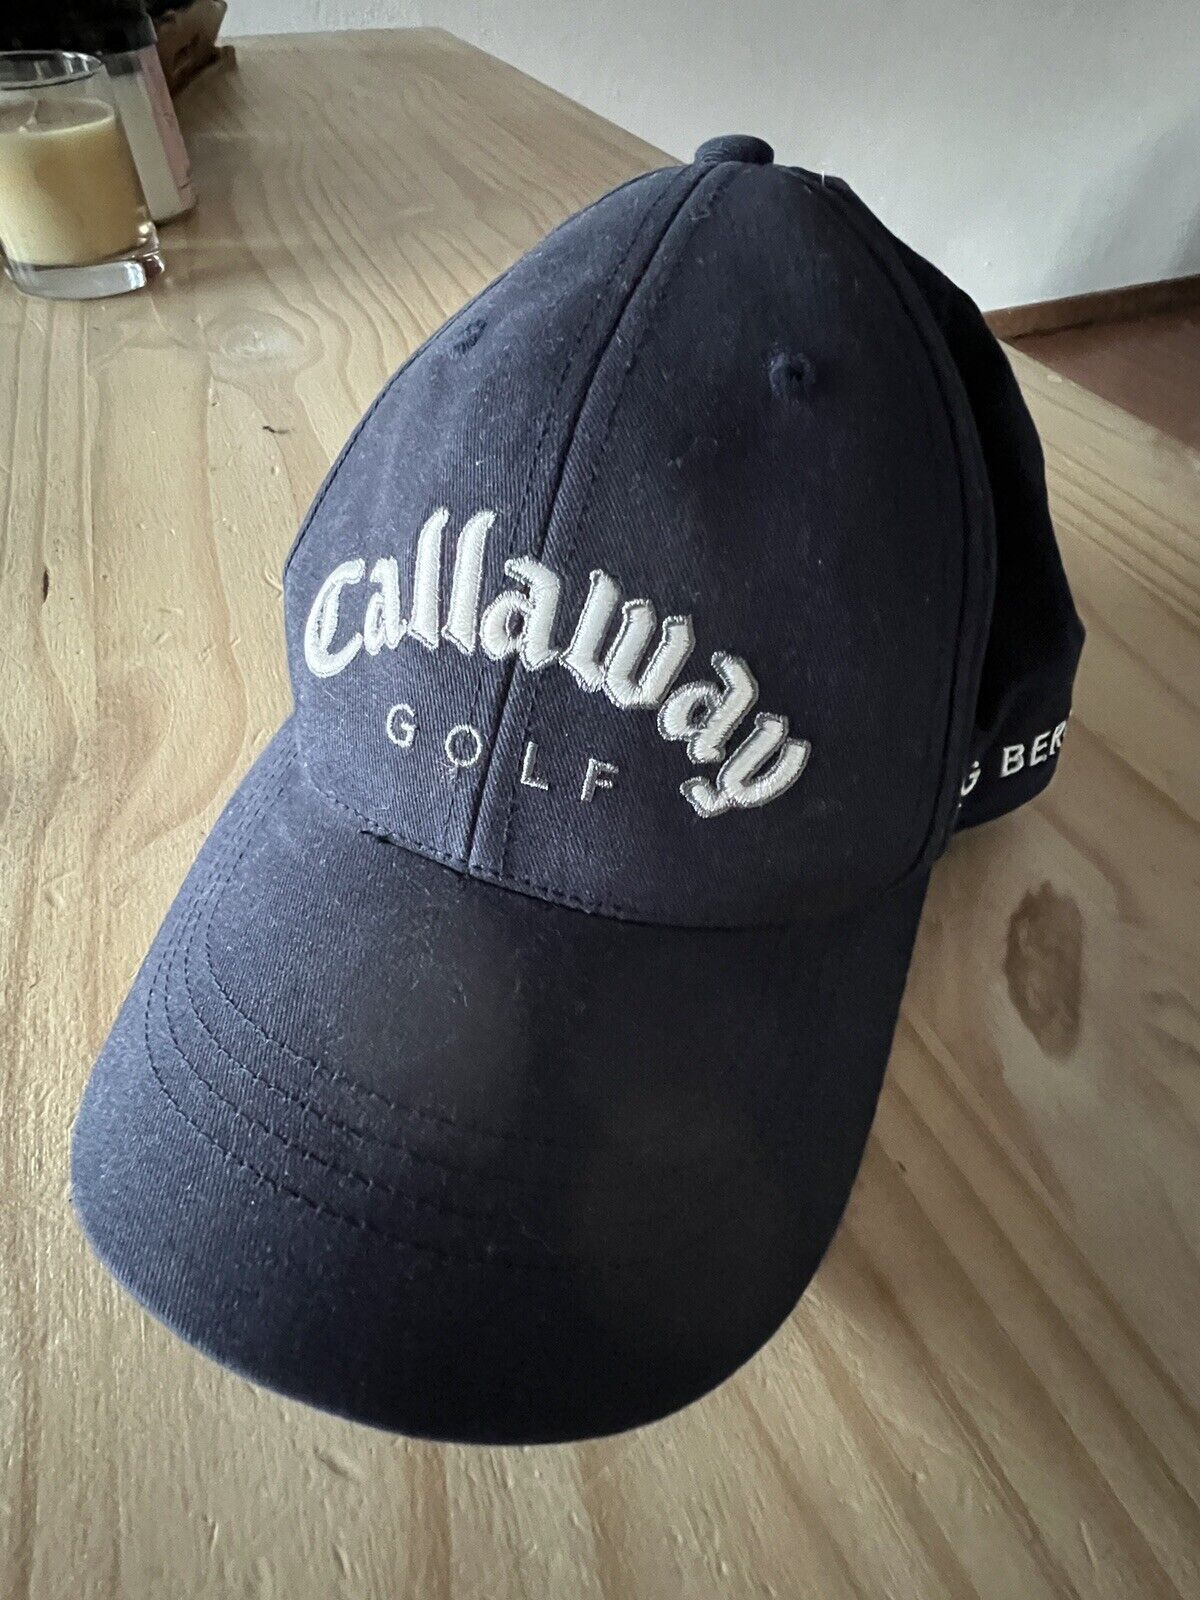 callaway golf hats for men big bertha Blue Adjustable